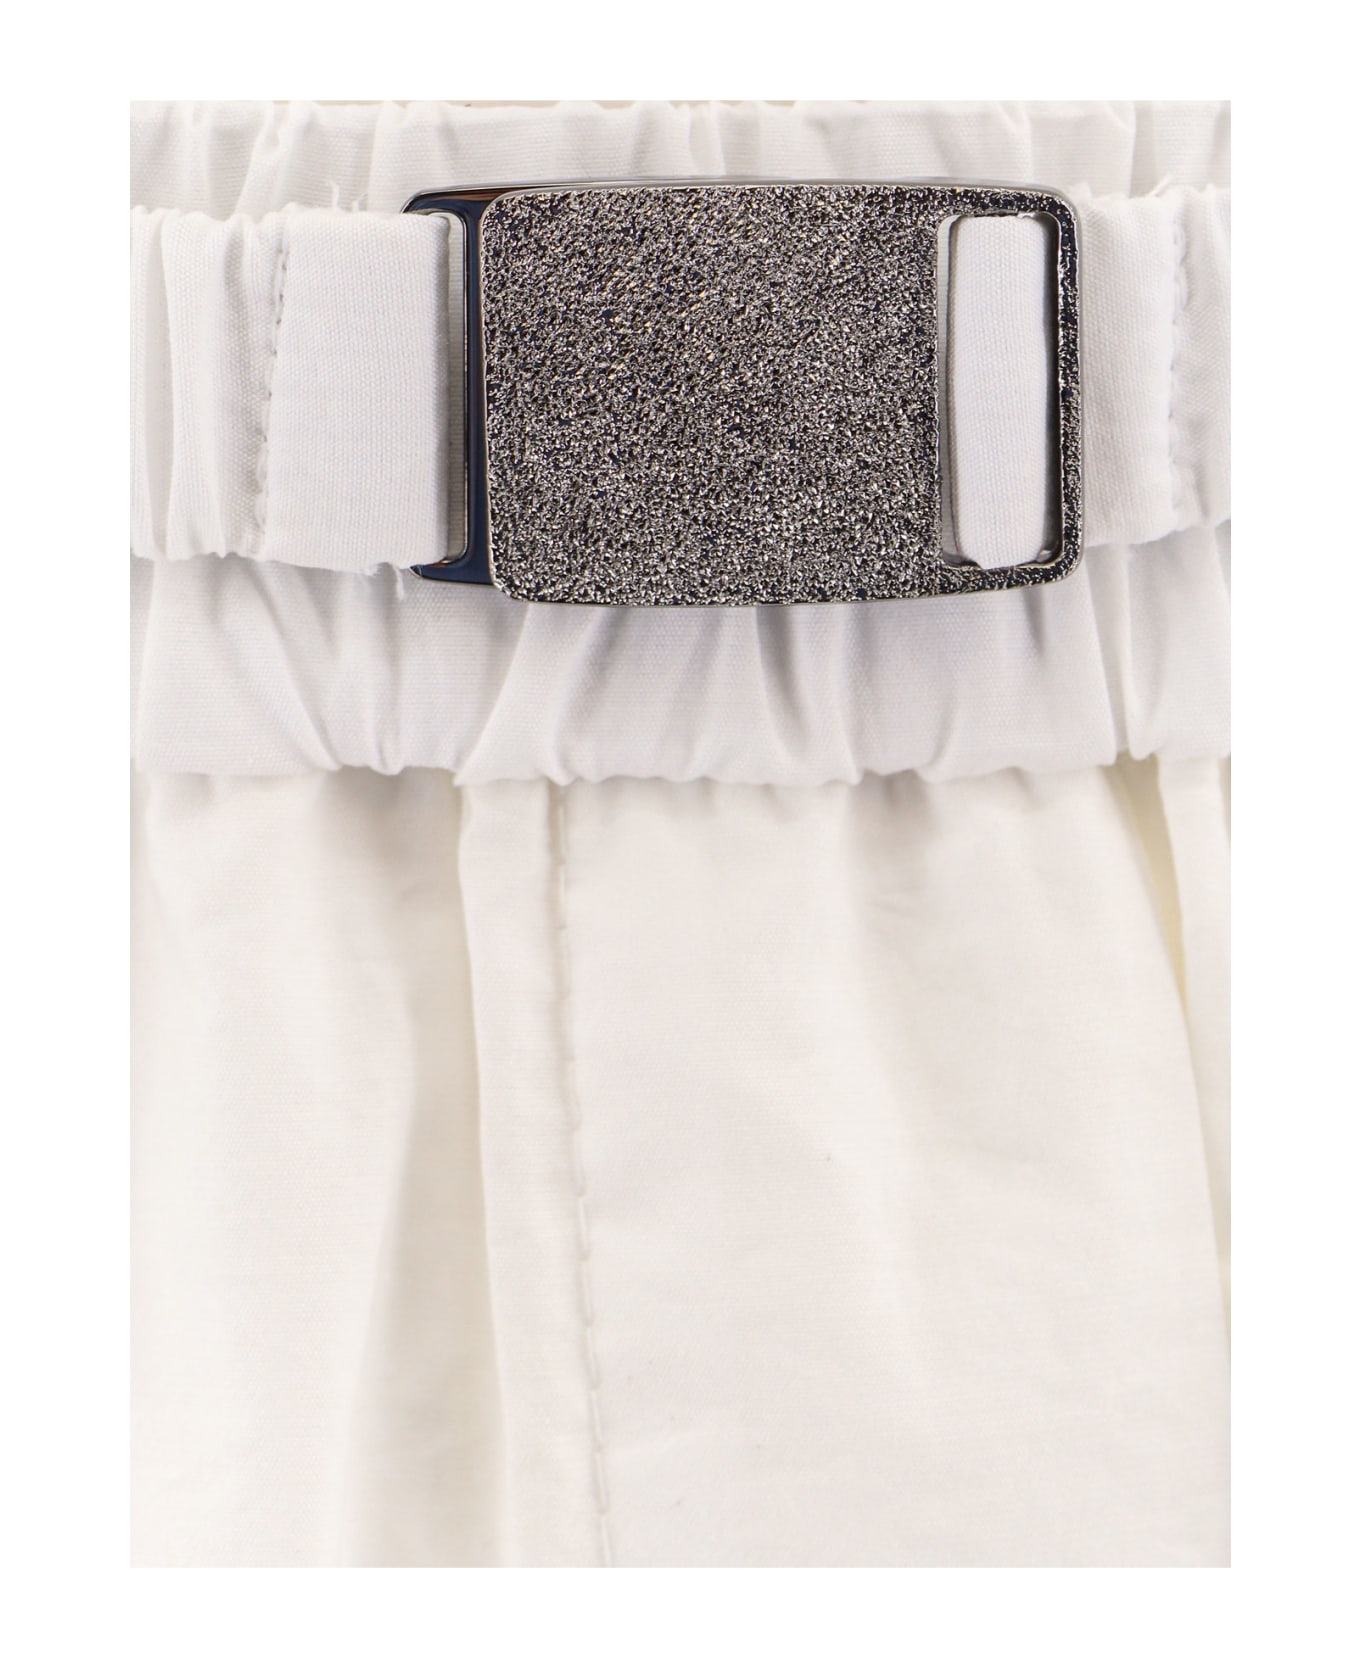 Brunello Cucinelli Cotton Blend Midi Skirt - White スカート